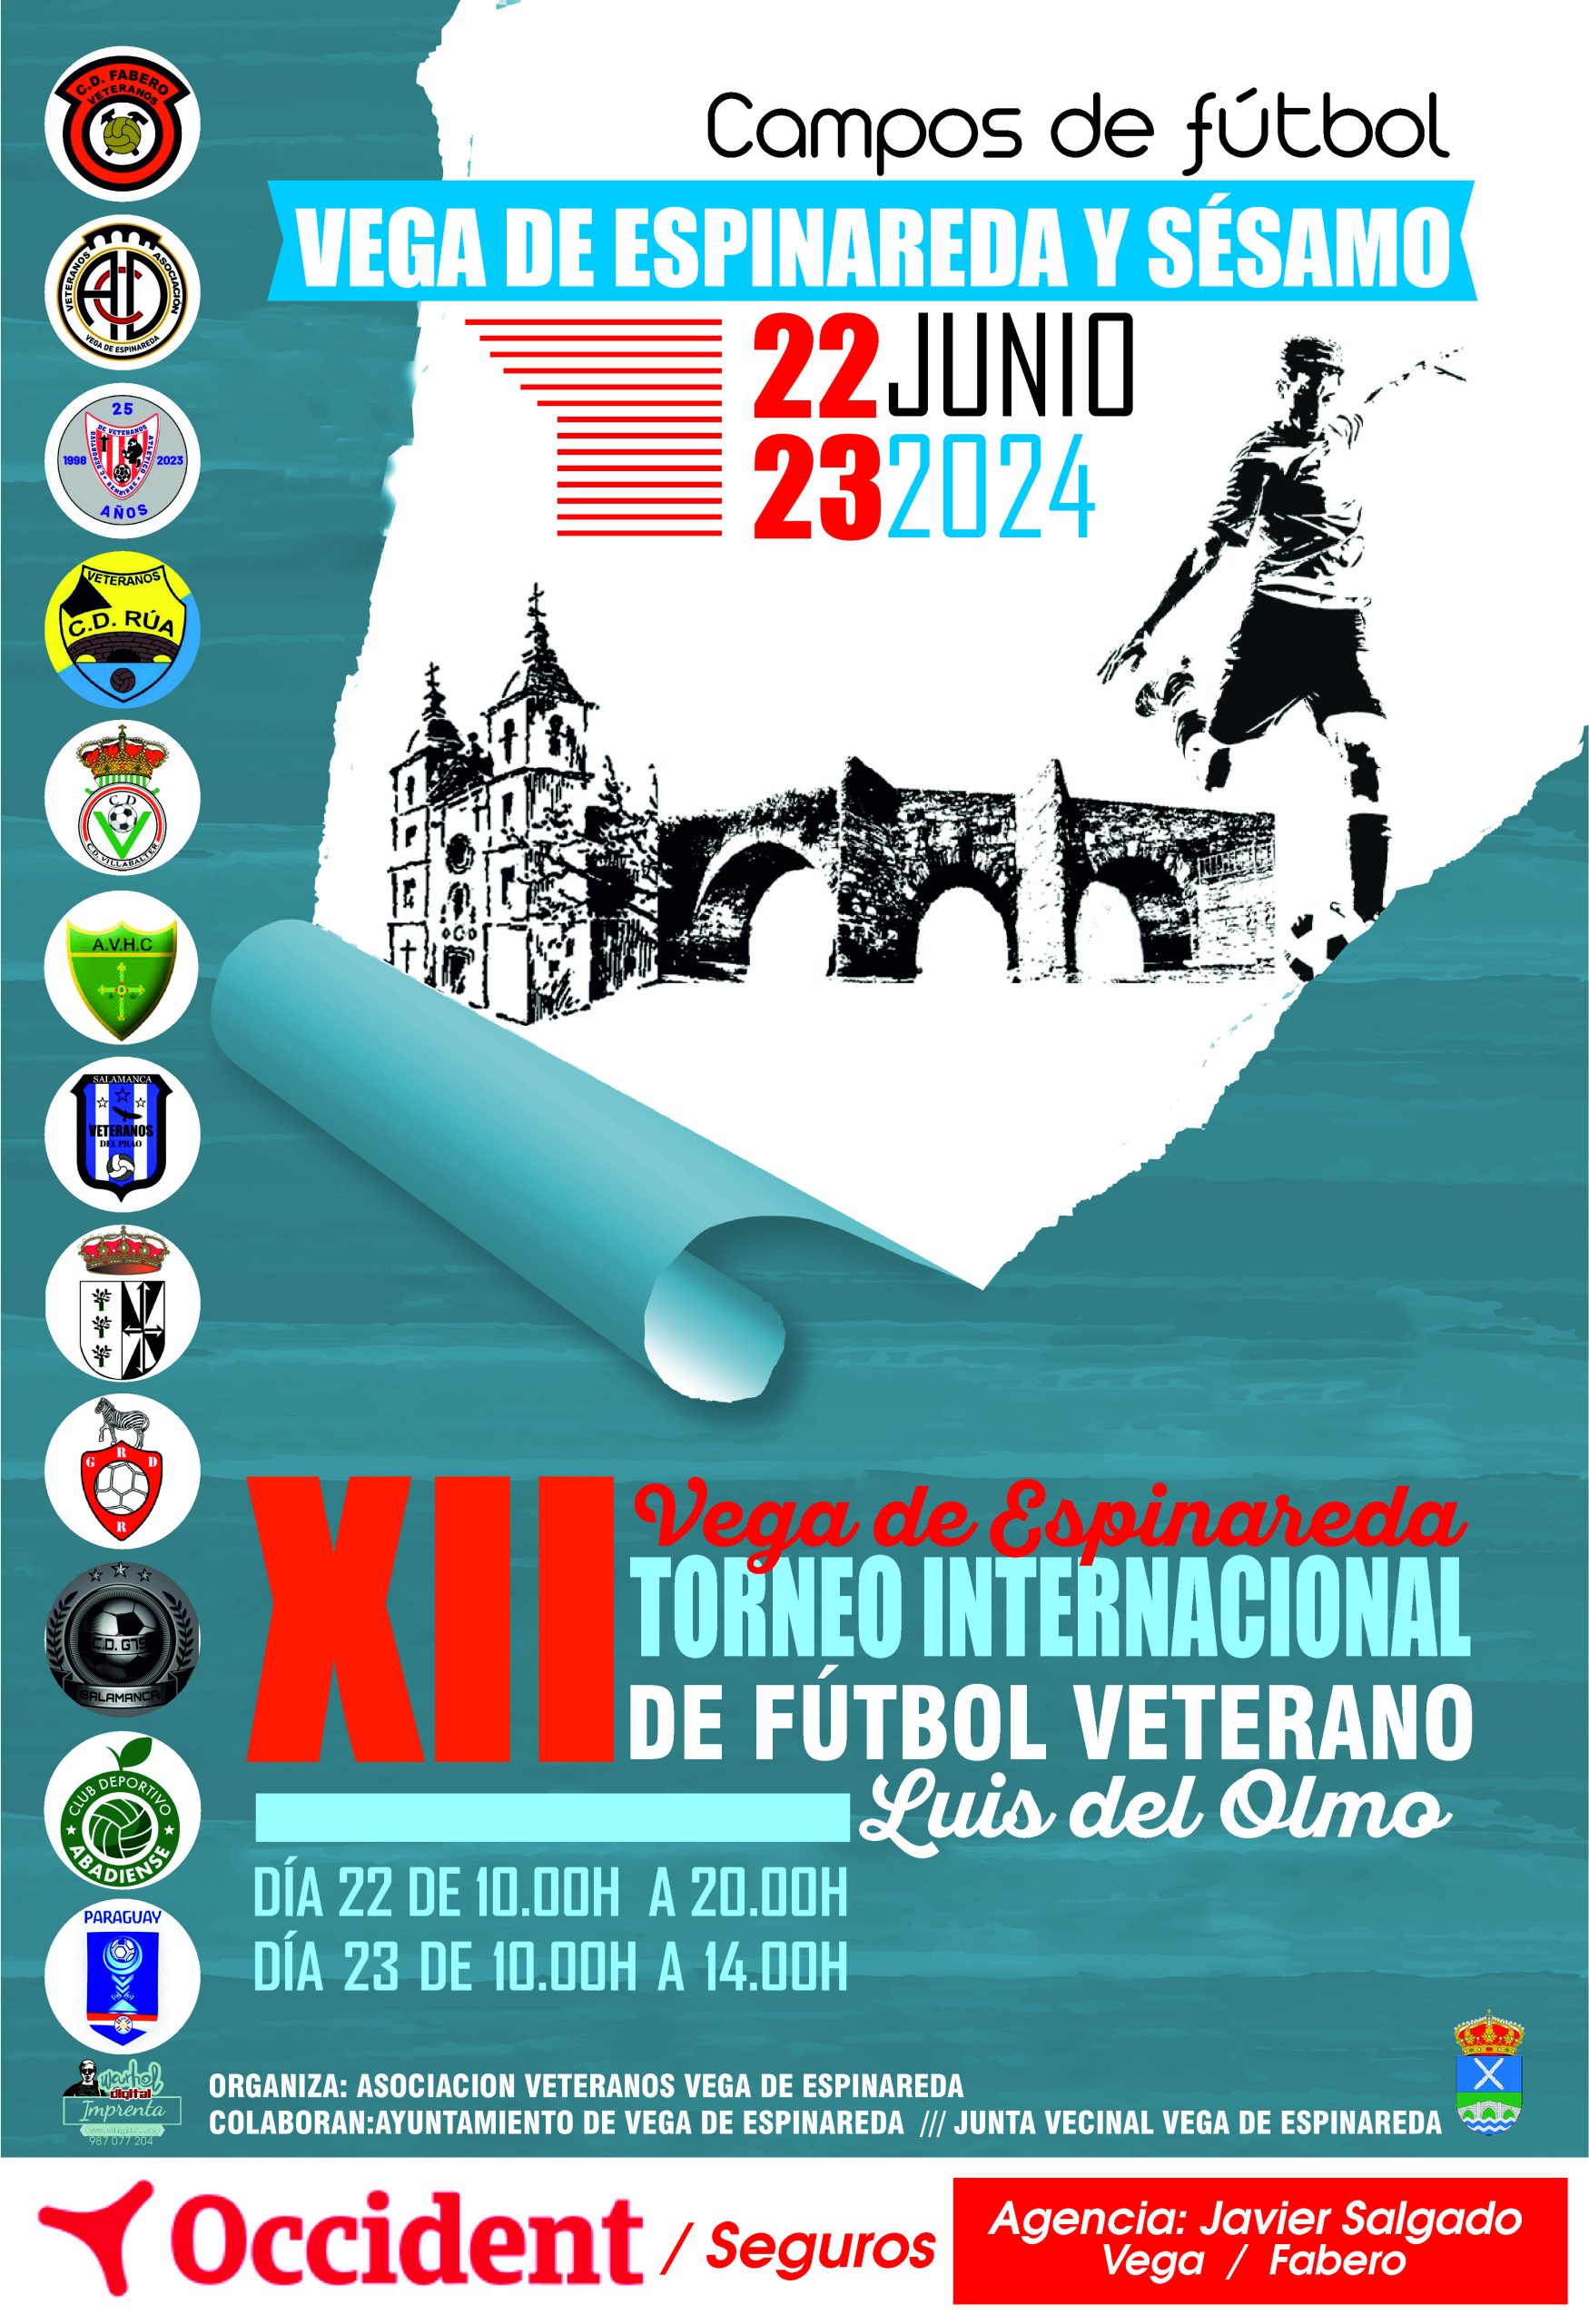 XII Torneo internacional de fútbol veterano Luis del Olmo este fin de semana en Vega de Espinareda 2